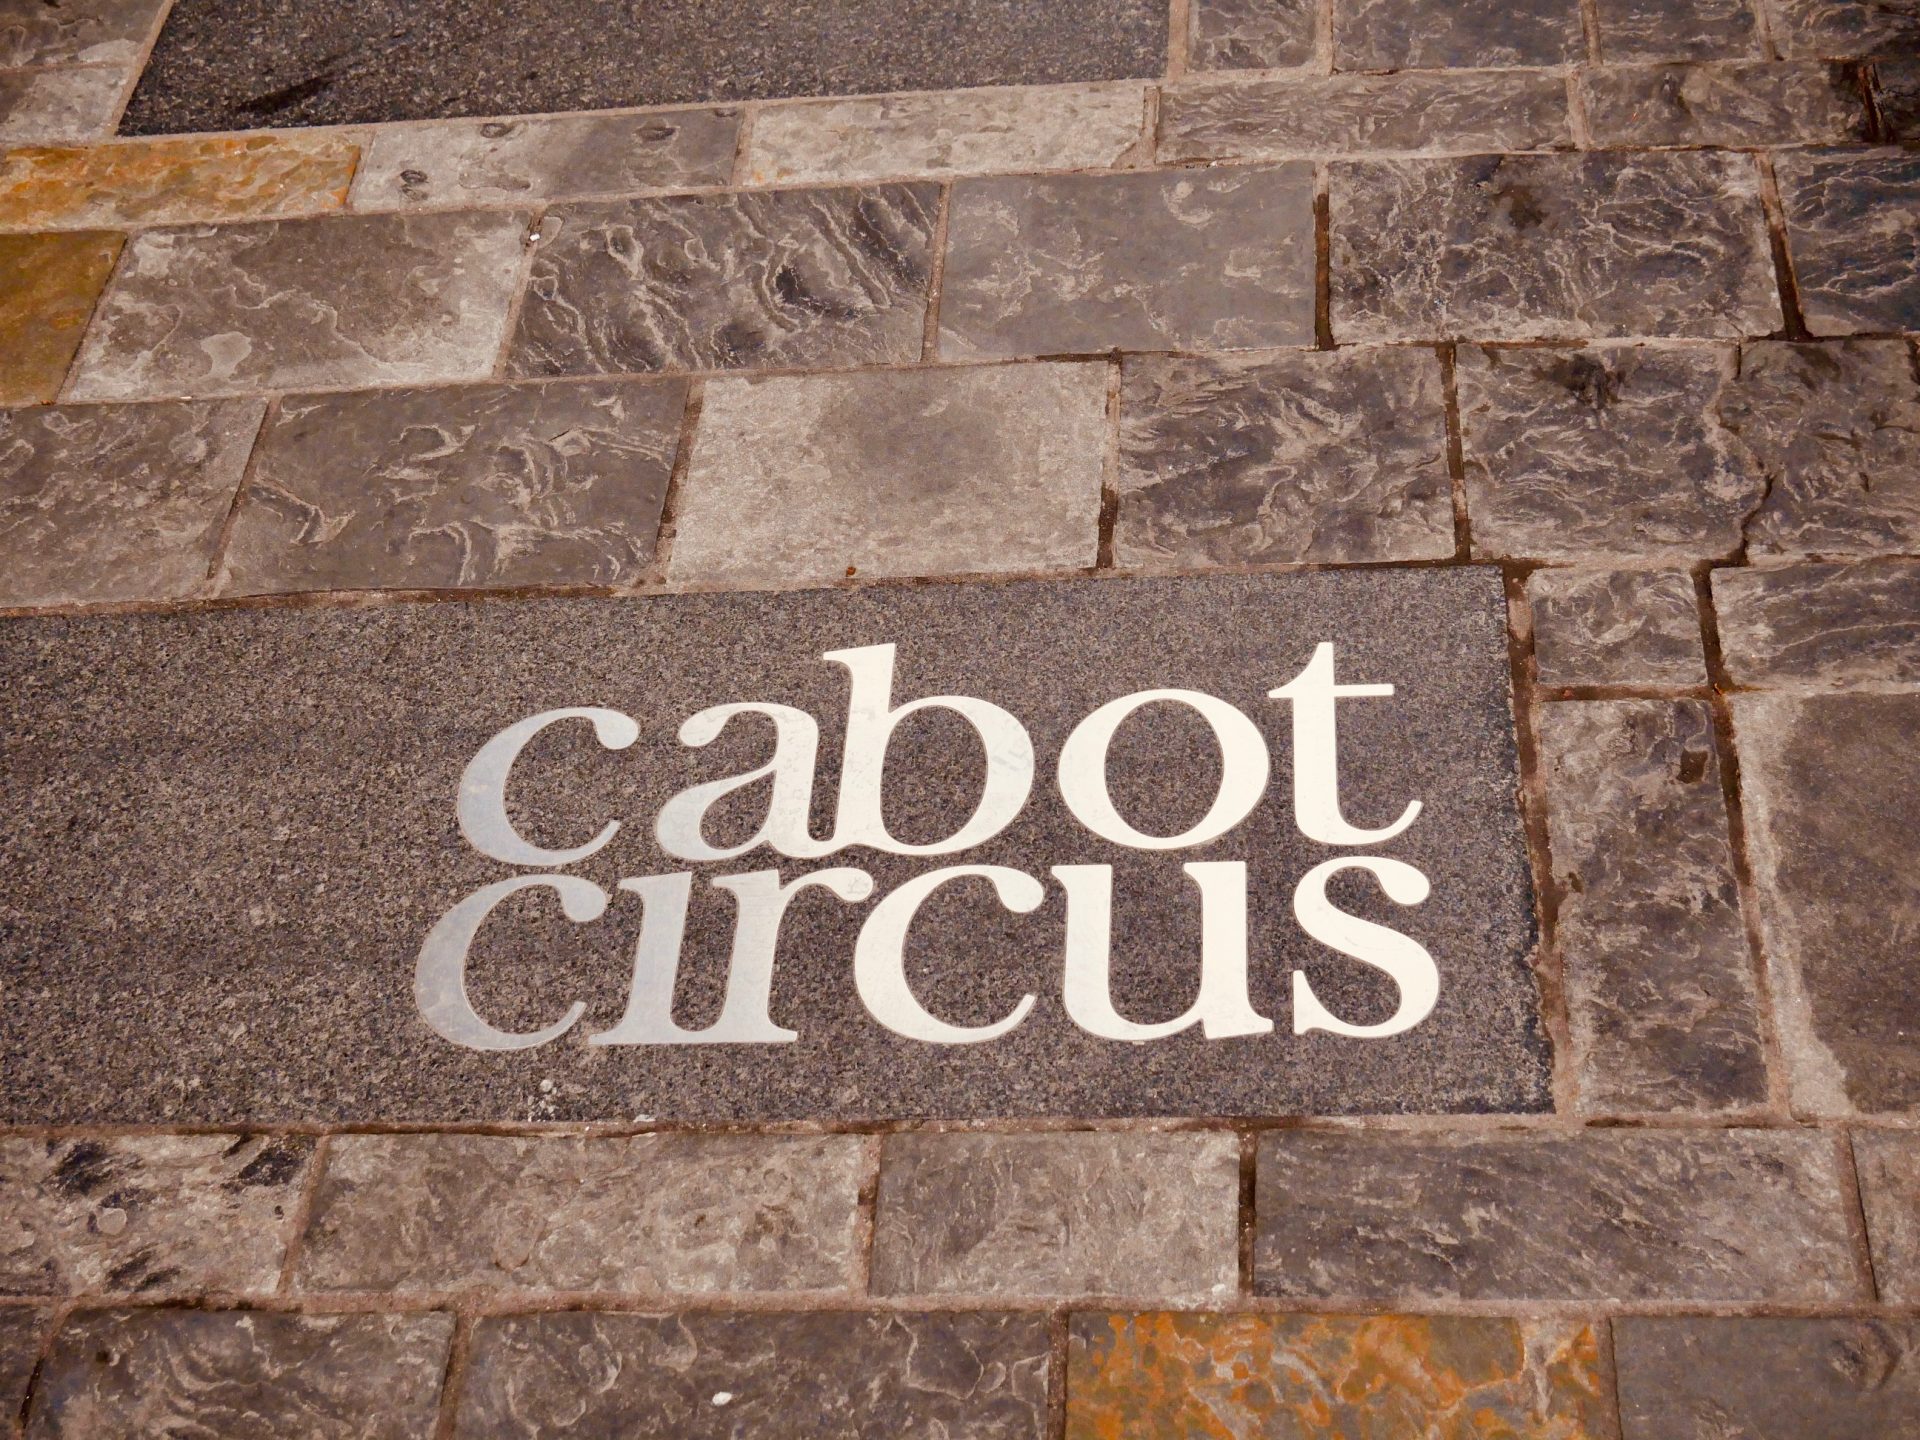 Cabot Circus